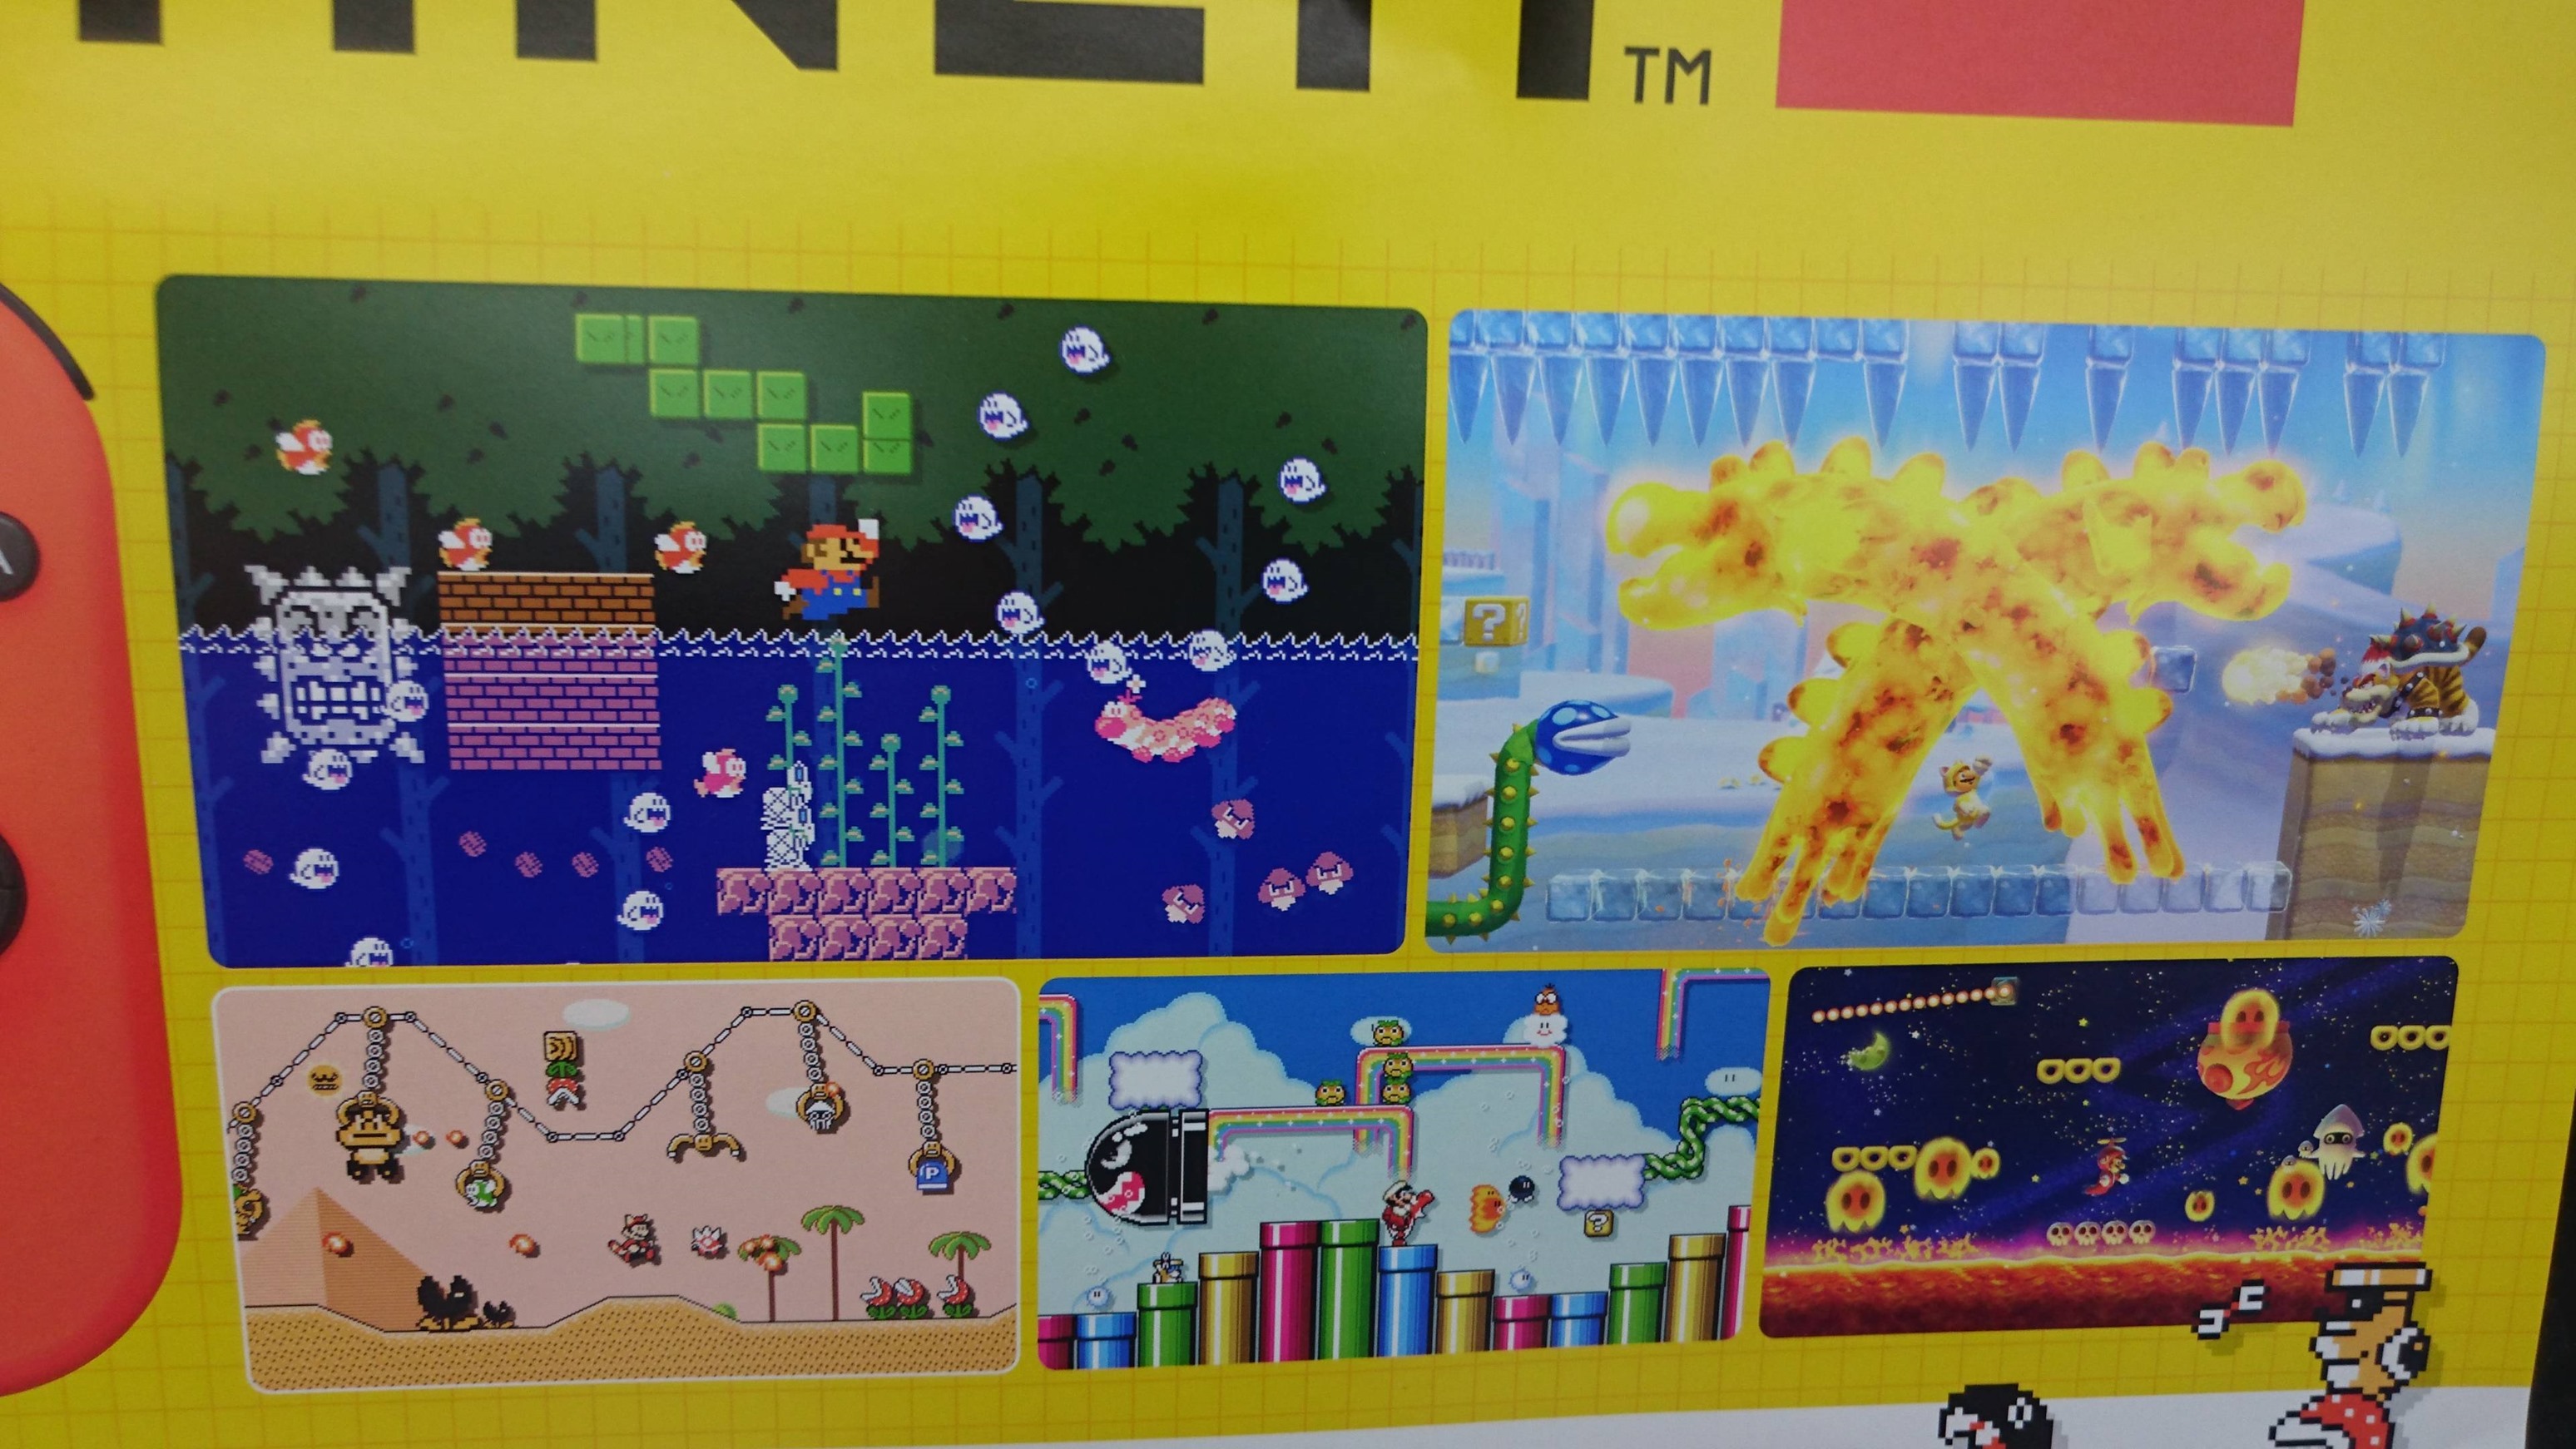 Cat Mario 2-2 - Super Mario Maker 2 